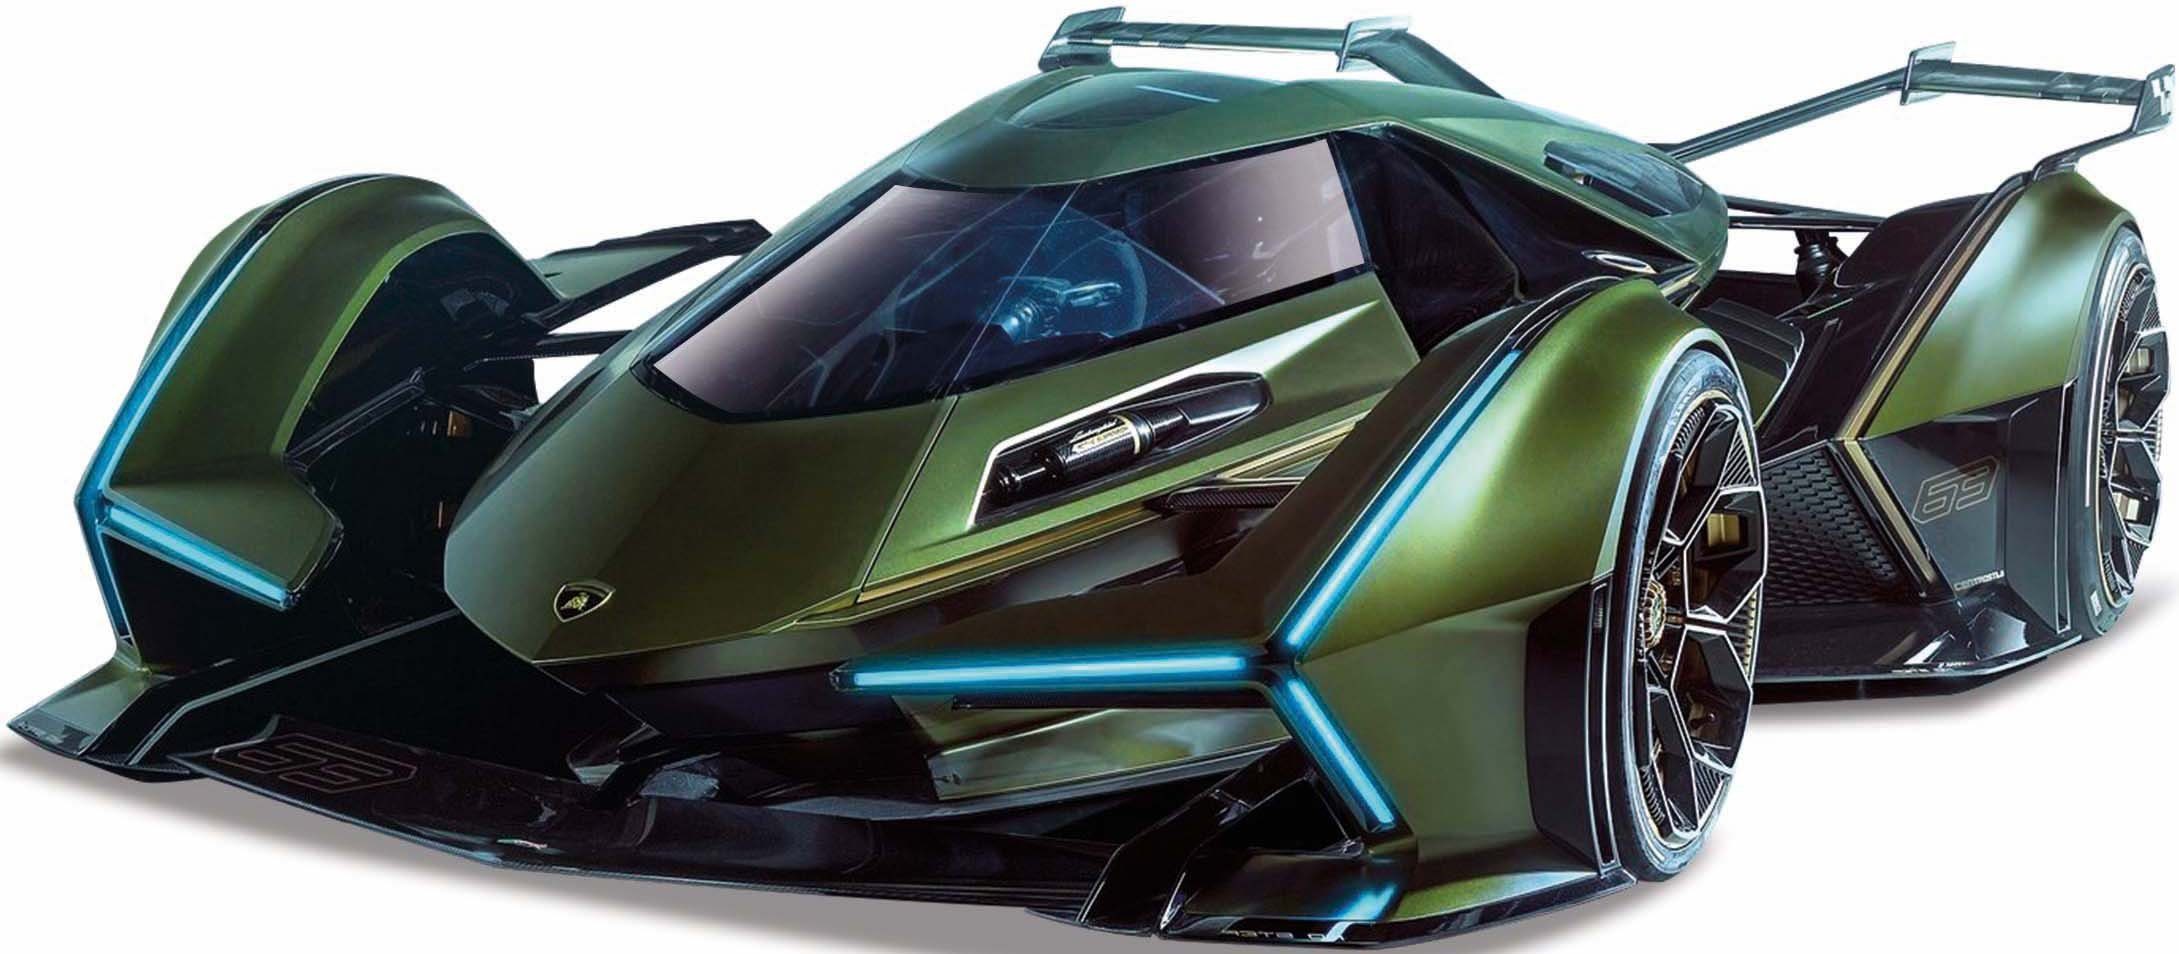 Grand Maßstab Maisto® Vision 1:18 V12 Lamborghini Sammlerauto Turismo,